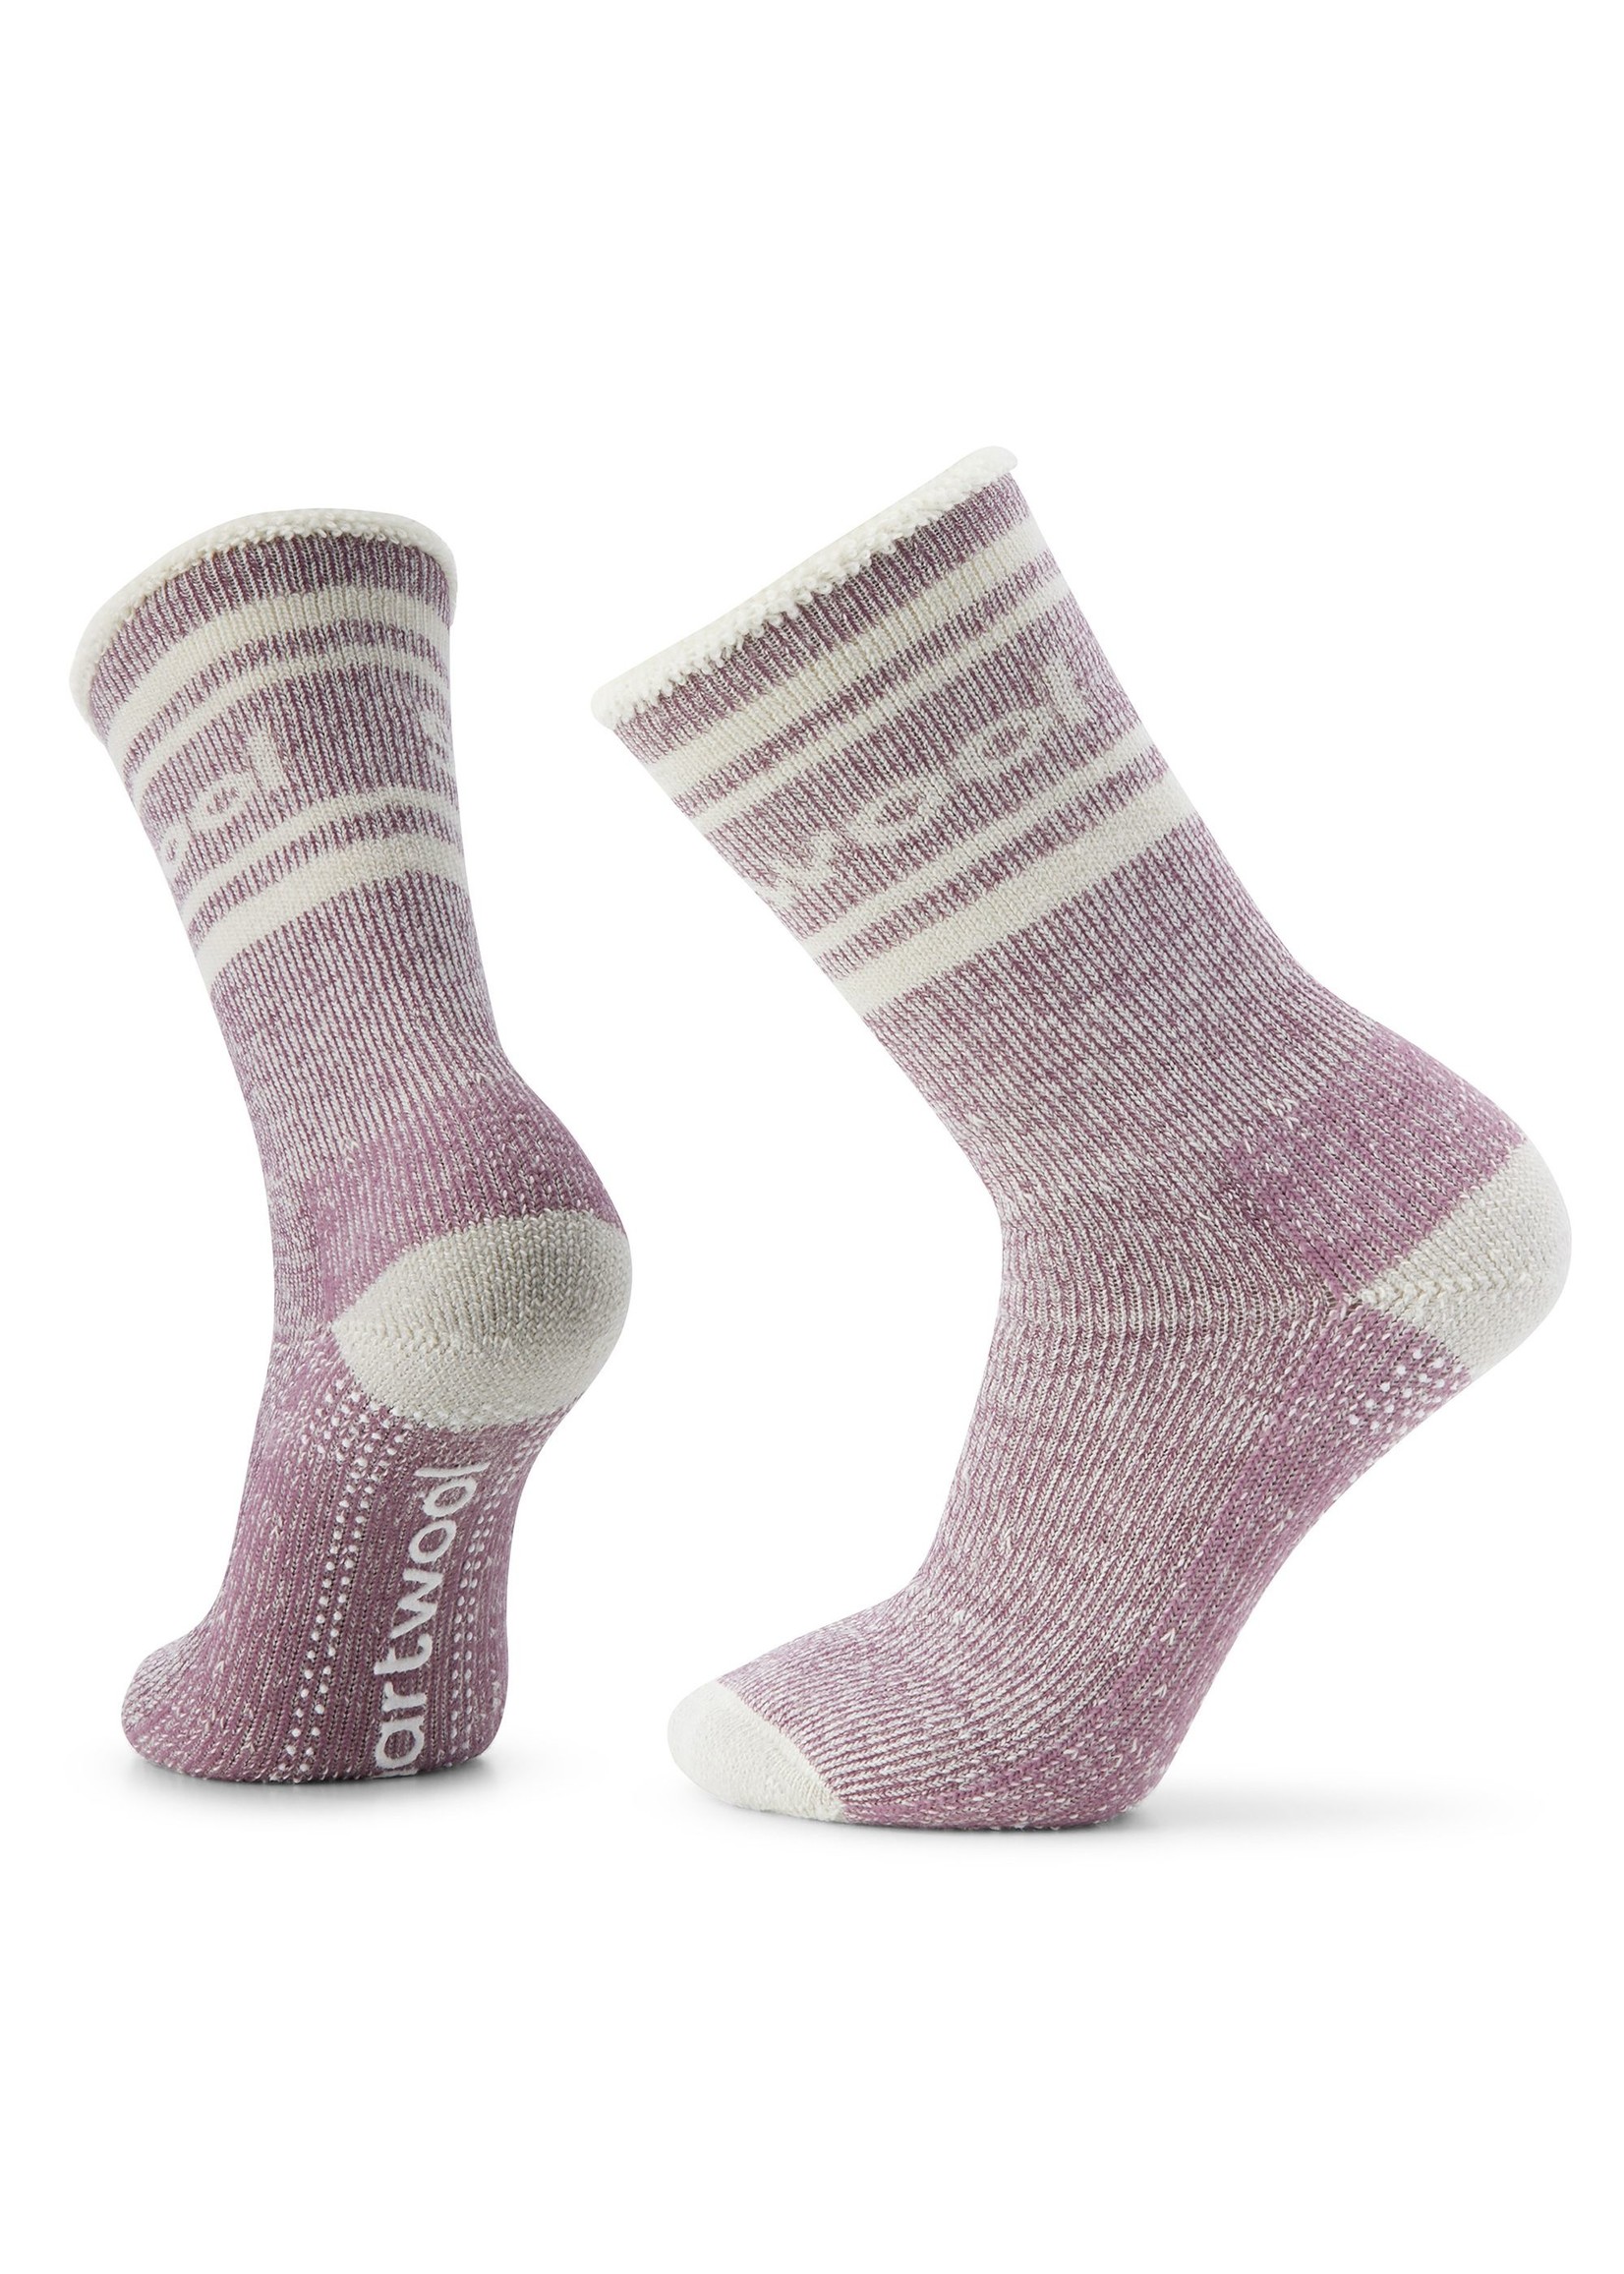 SMARTWOOL Women's indoor slipper socks